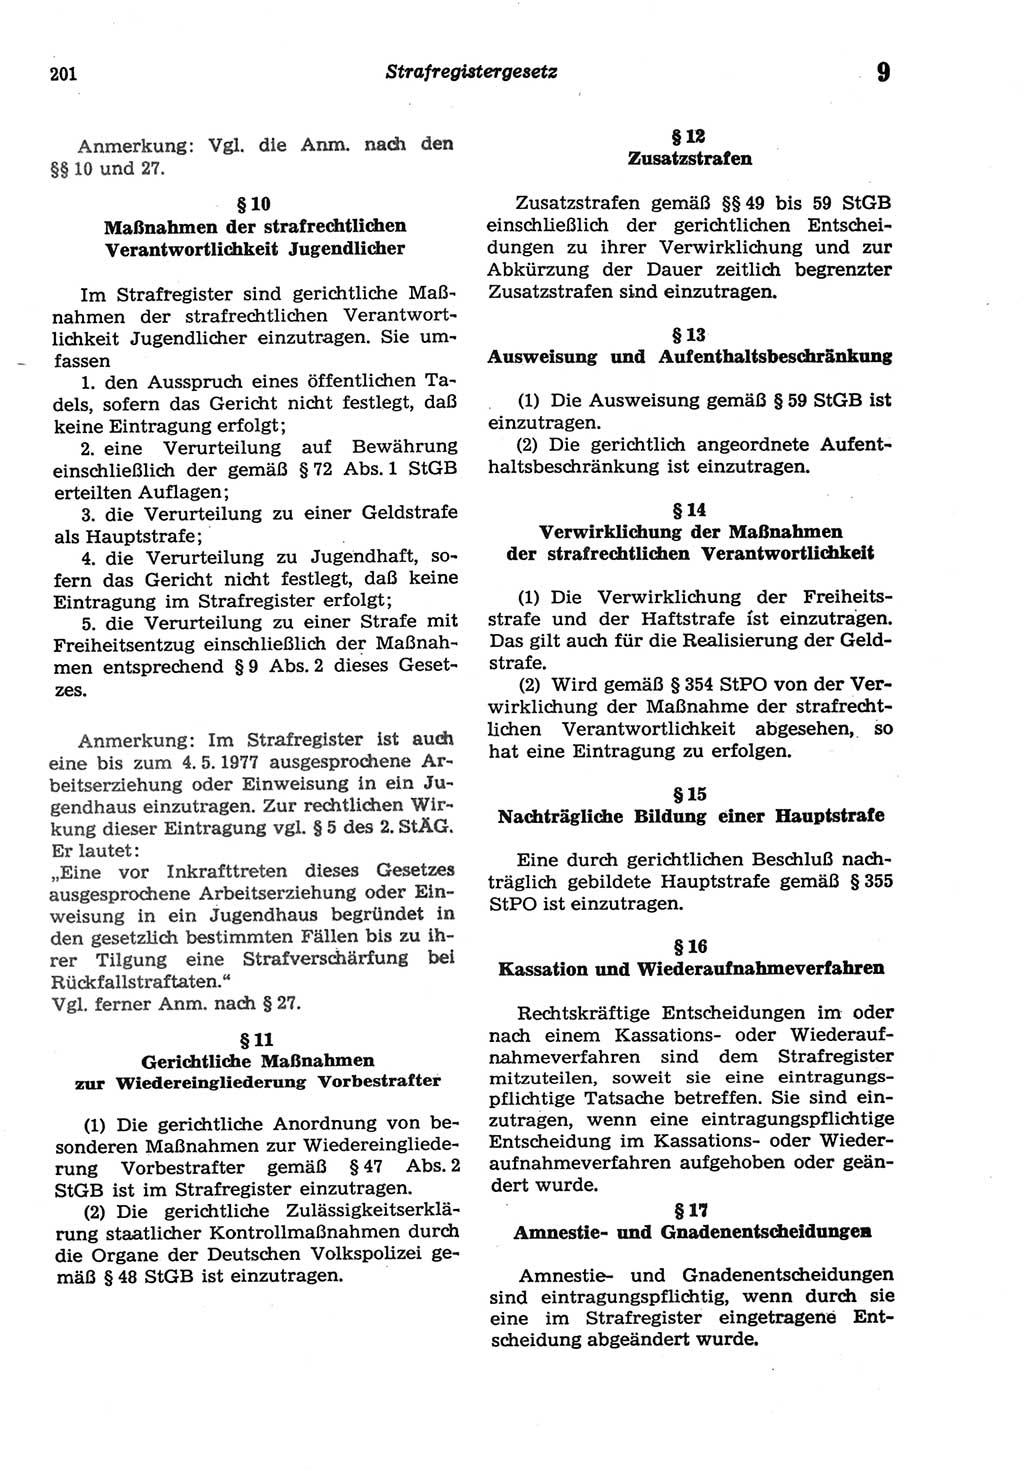 Strafprozeßordnung (StPO) der Deutschen Demokratischen Republik (DDR) sowie angrenzende Gesetze und Bestimmungen 1977, Seite 201 (StPO DDR Ges. Best. 1977, S. 201)